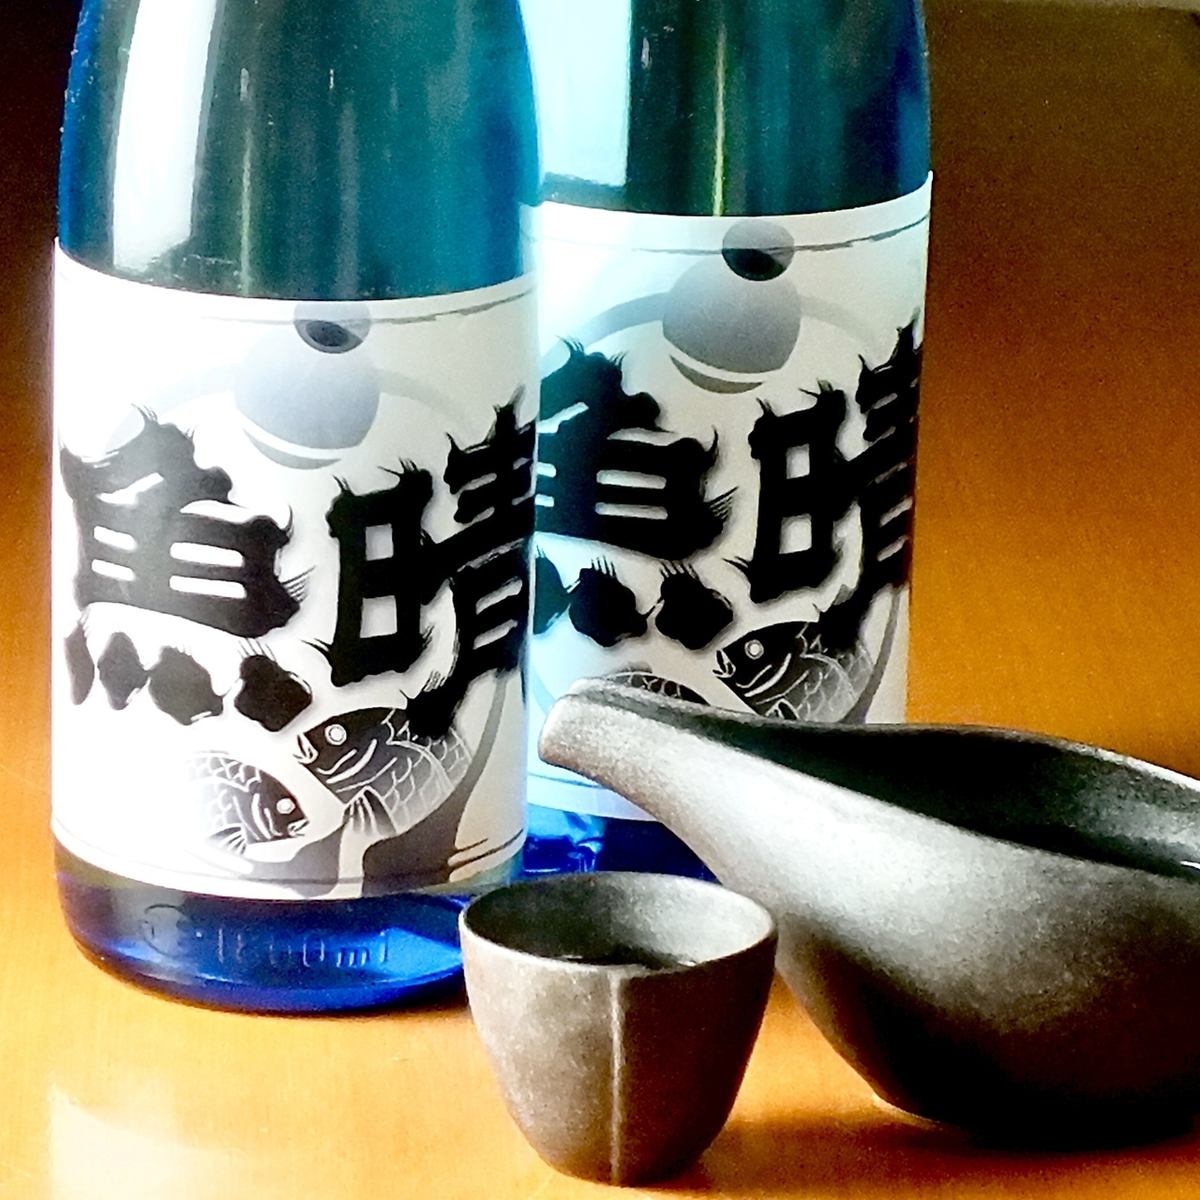 We are particular about sake! We have seasonal sake!